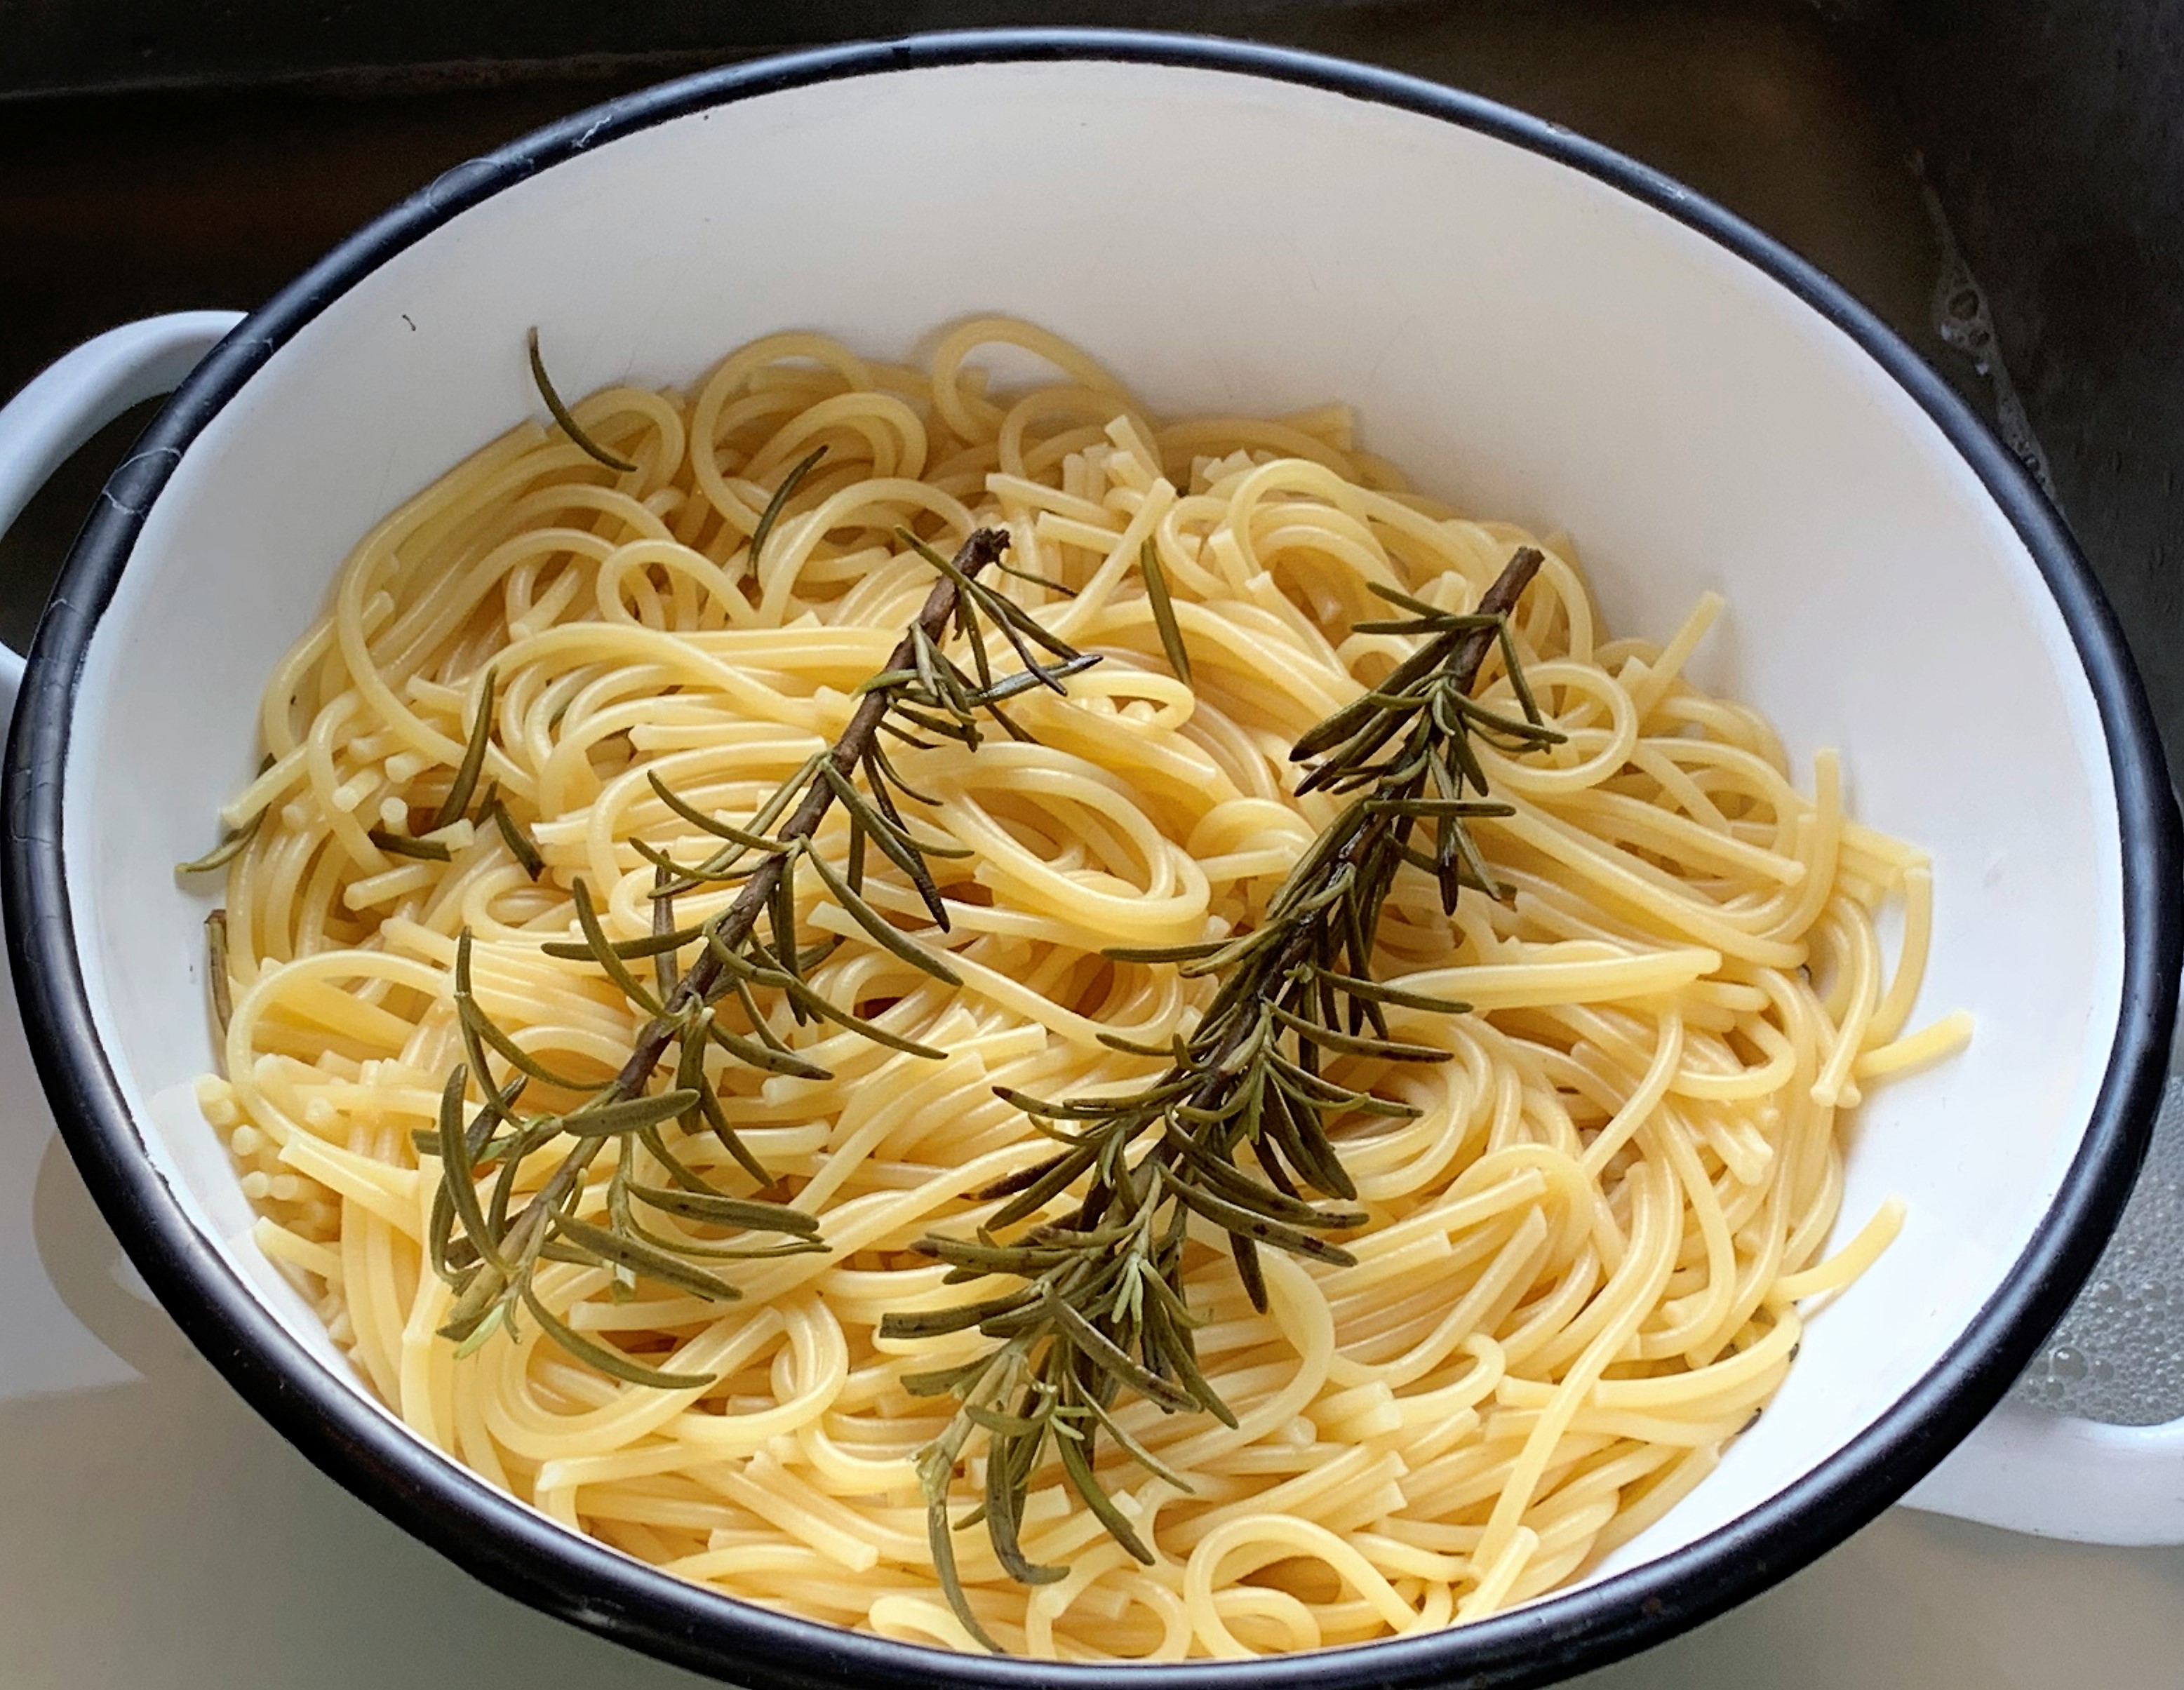 Die mitgekochten Rosmarinzweige geben den Spaghetti eine dezente Zusatznote